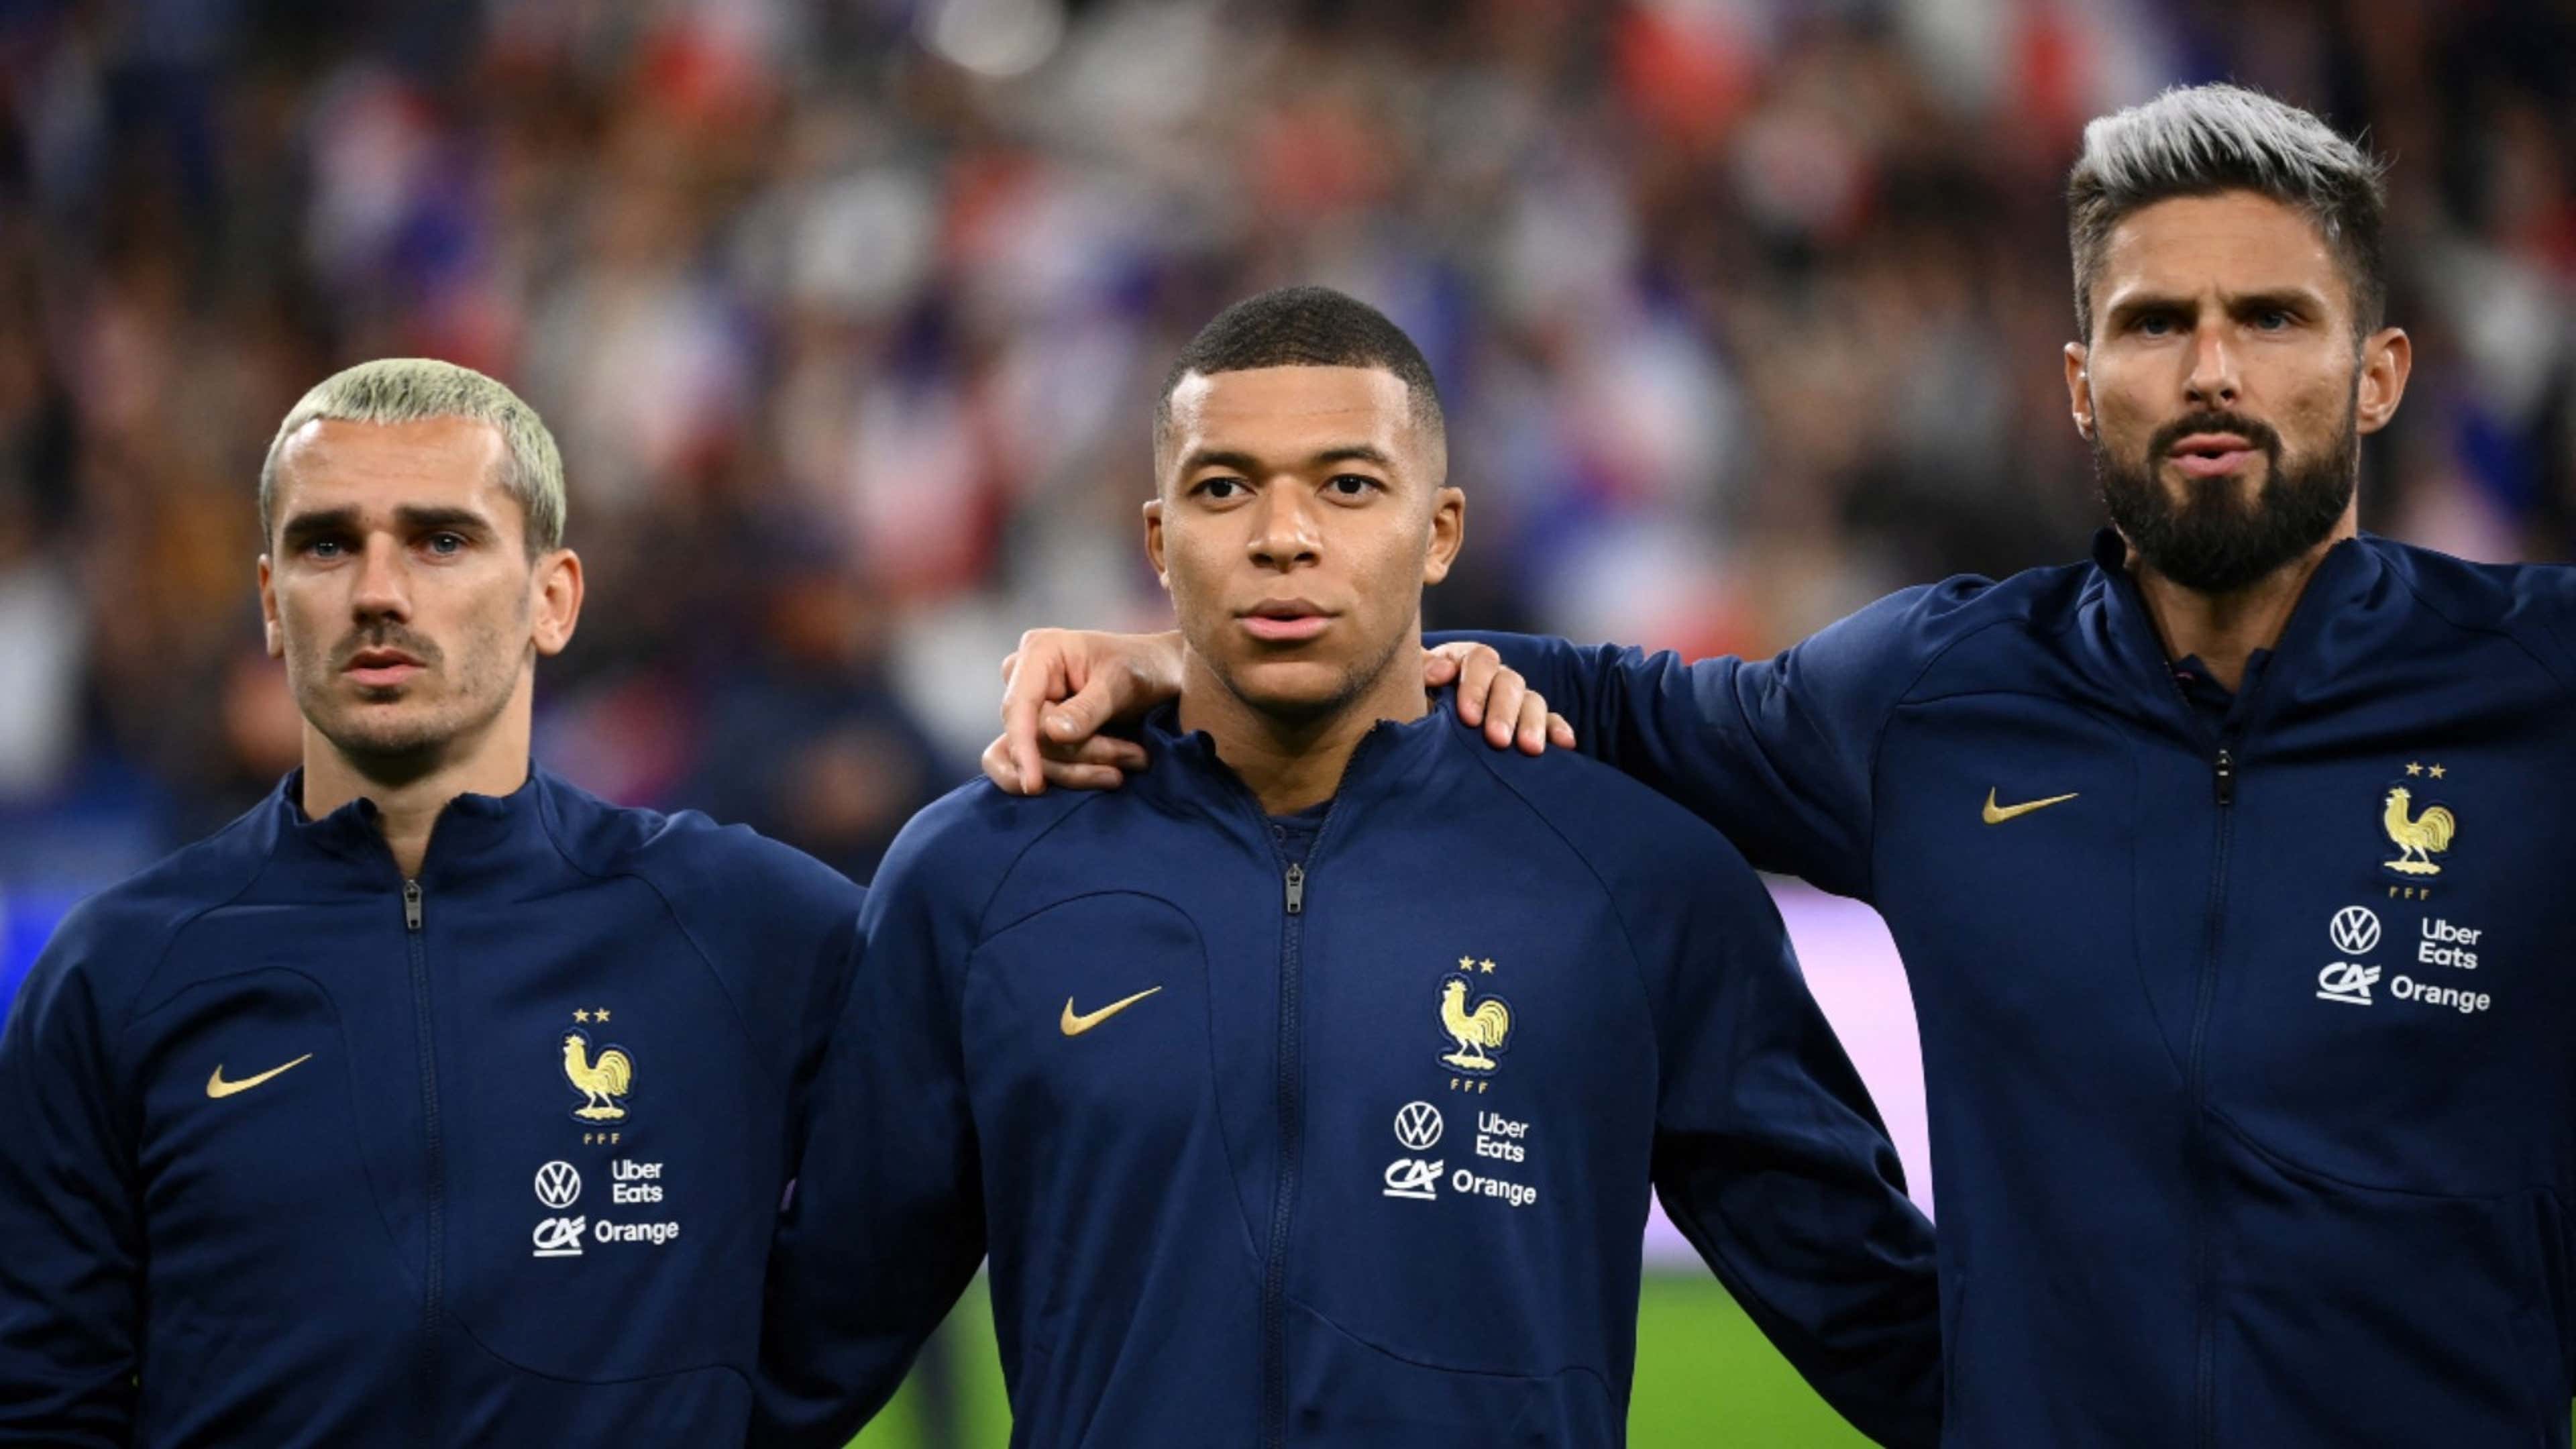 Deschamps convoca os 23 da França com Mbappé, Griezmann, Pogba e companhia, copa 2018